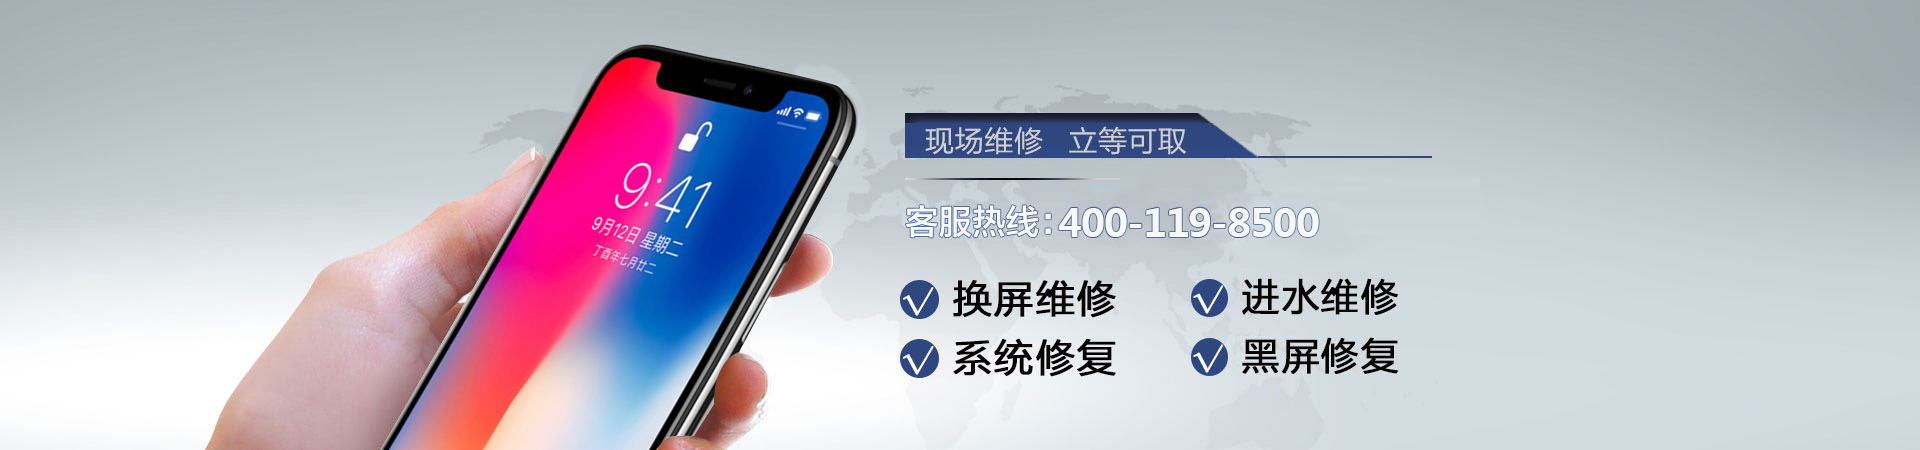 福州苹果手机维修服务地址查询